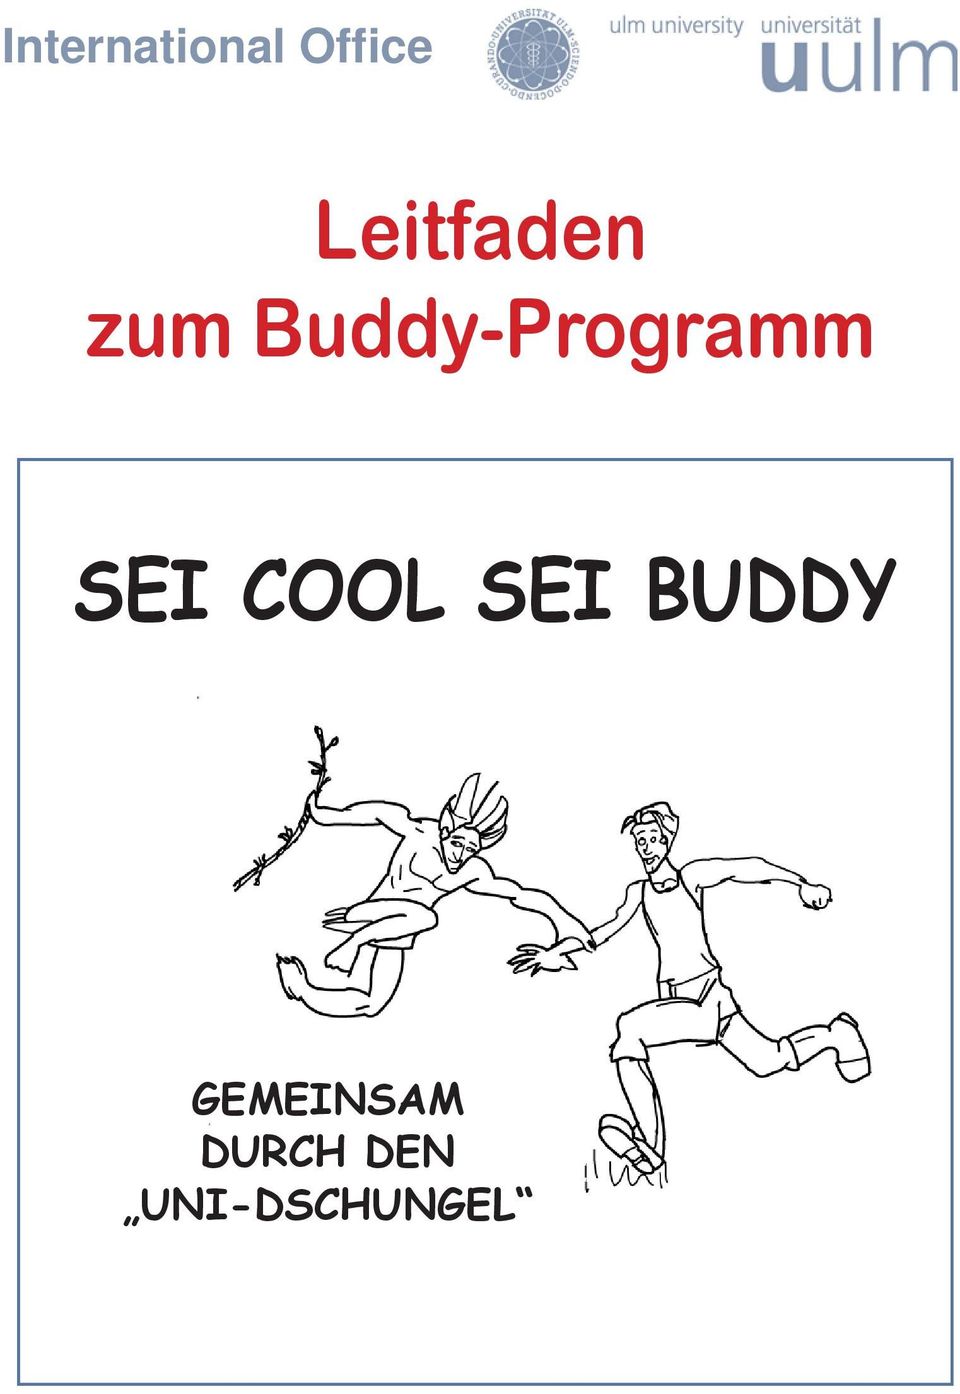 Buddy-Programm SEI COOL